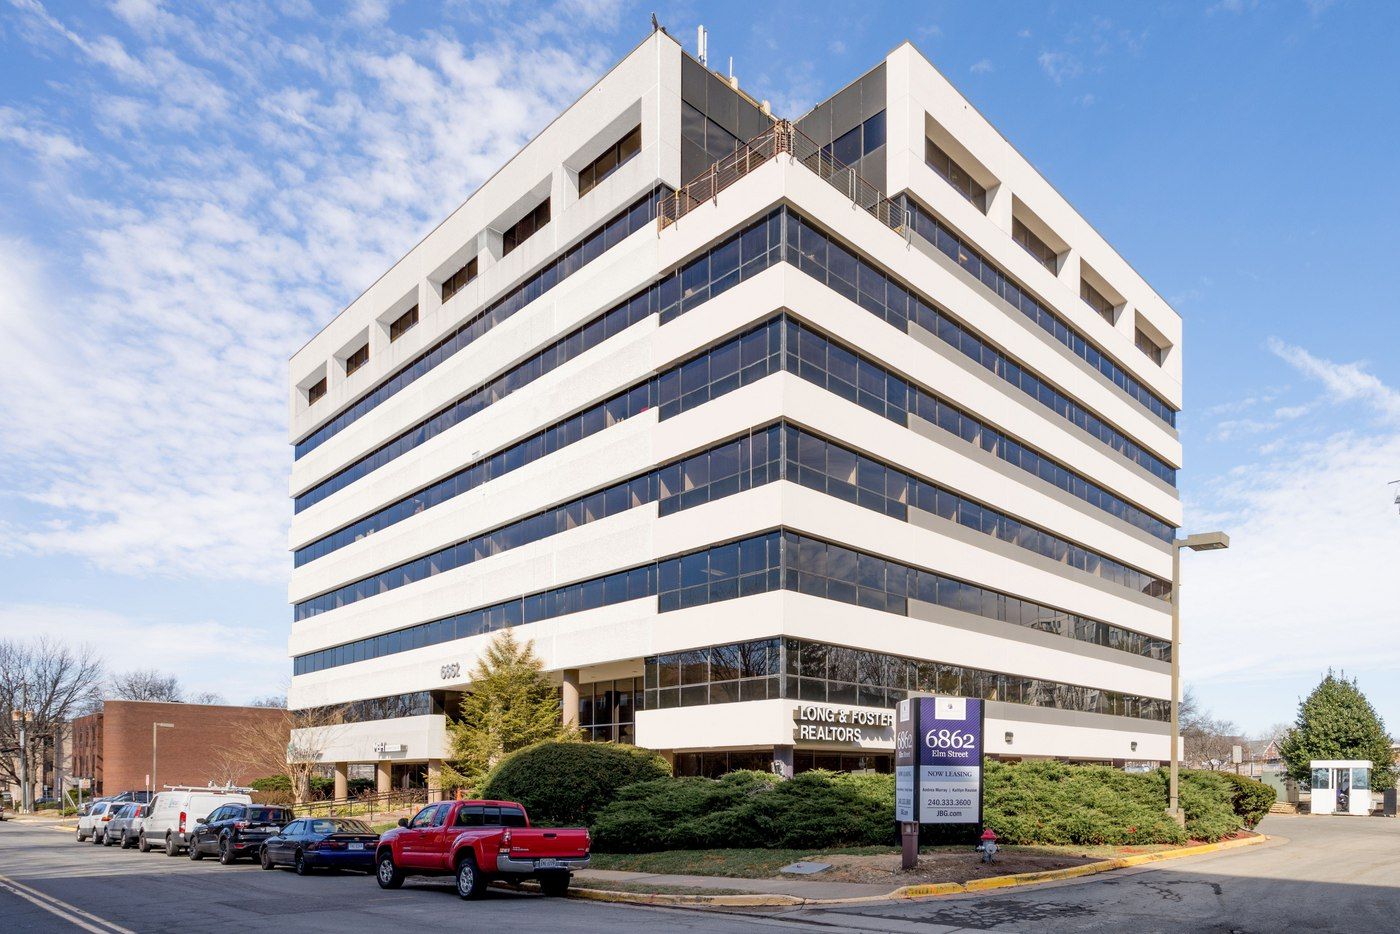 PartnerMD's office building in McLean, VA